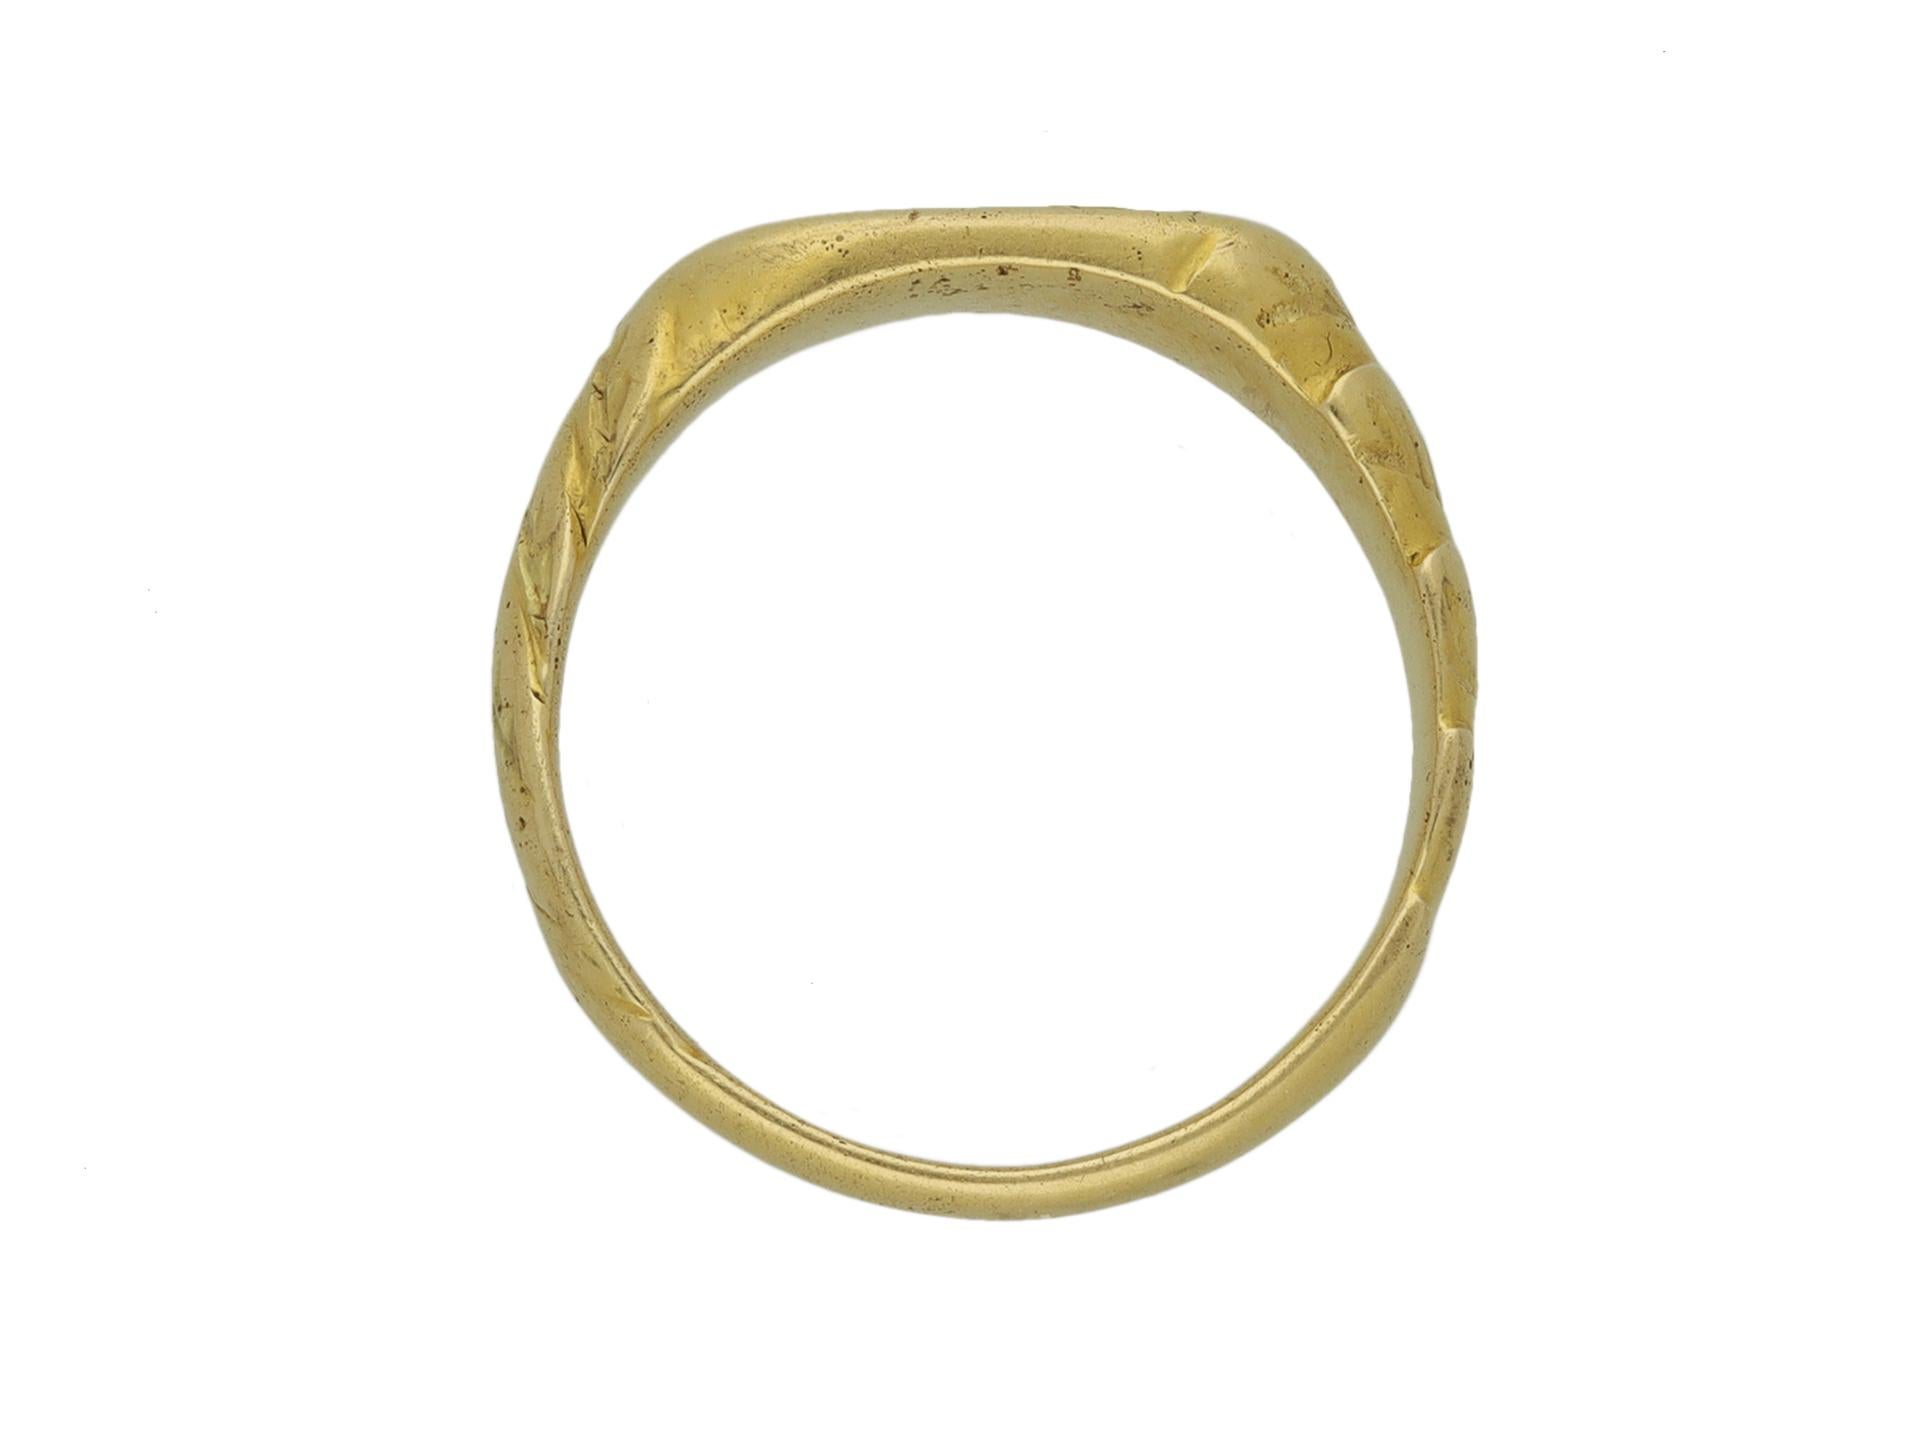 medieval rings